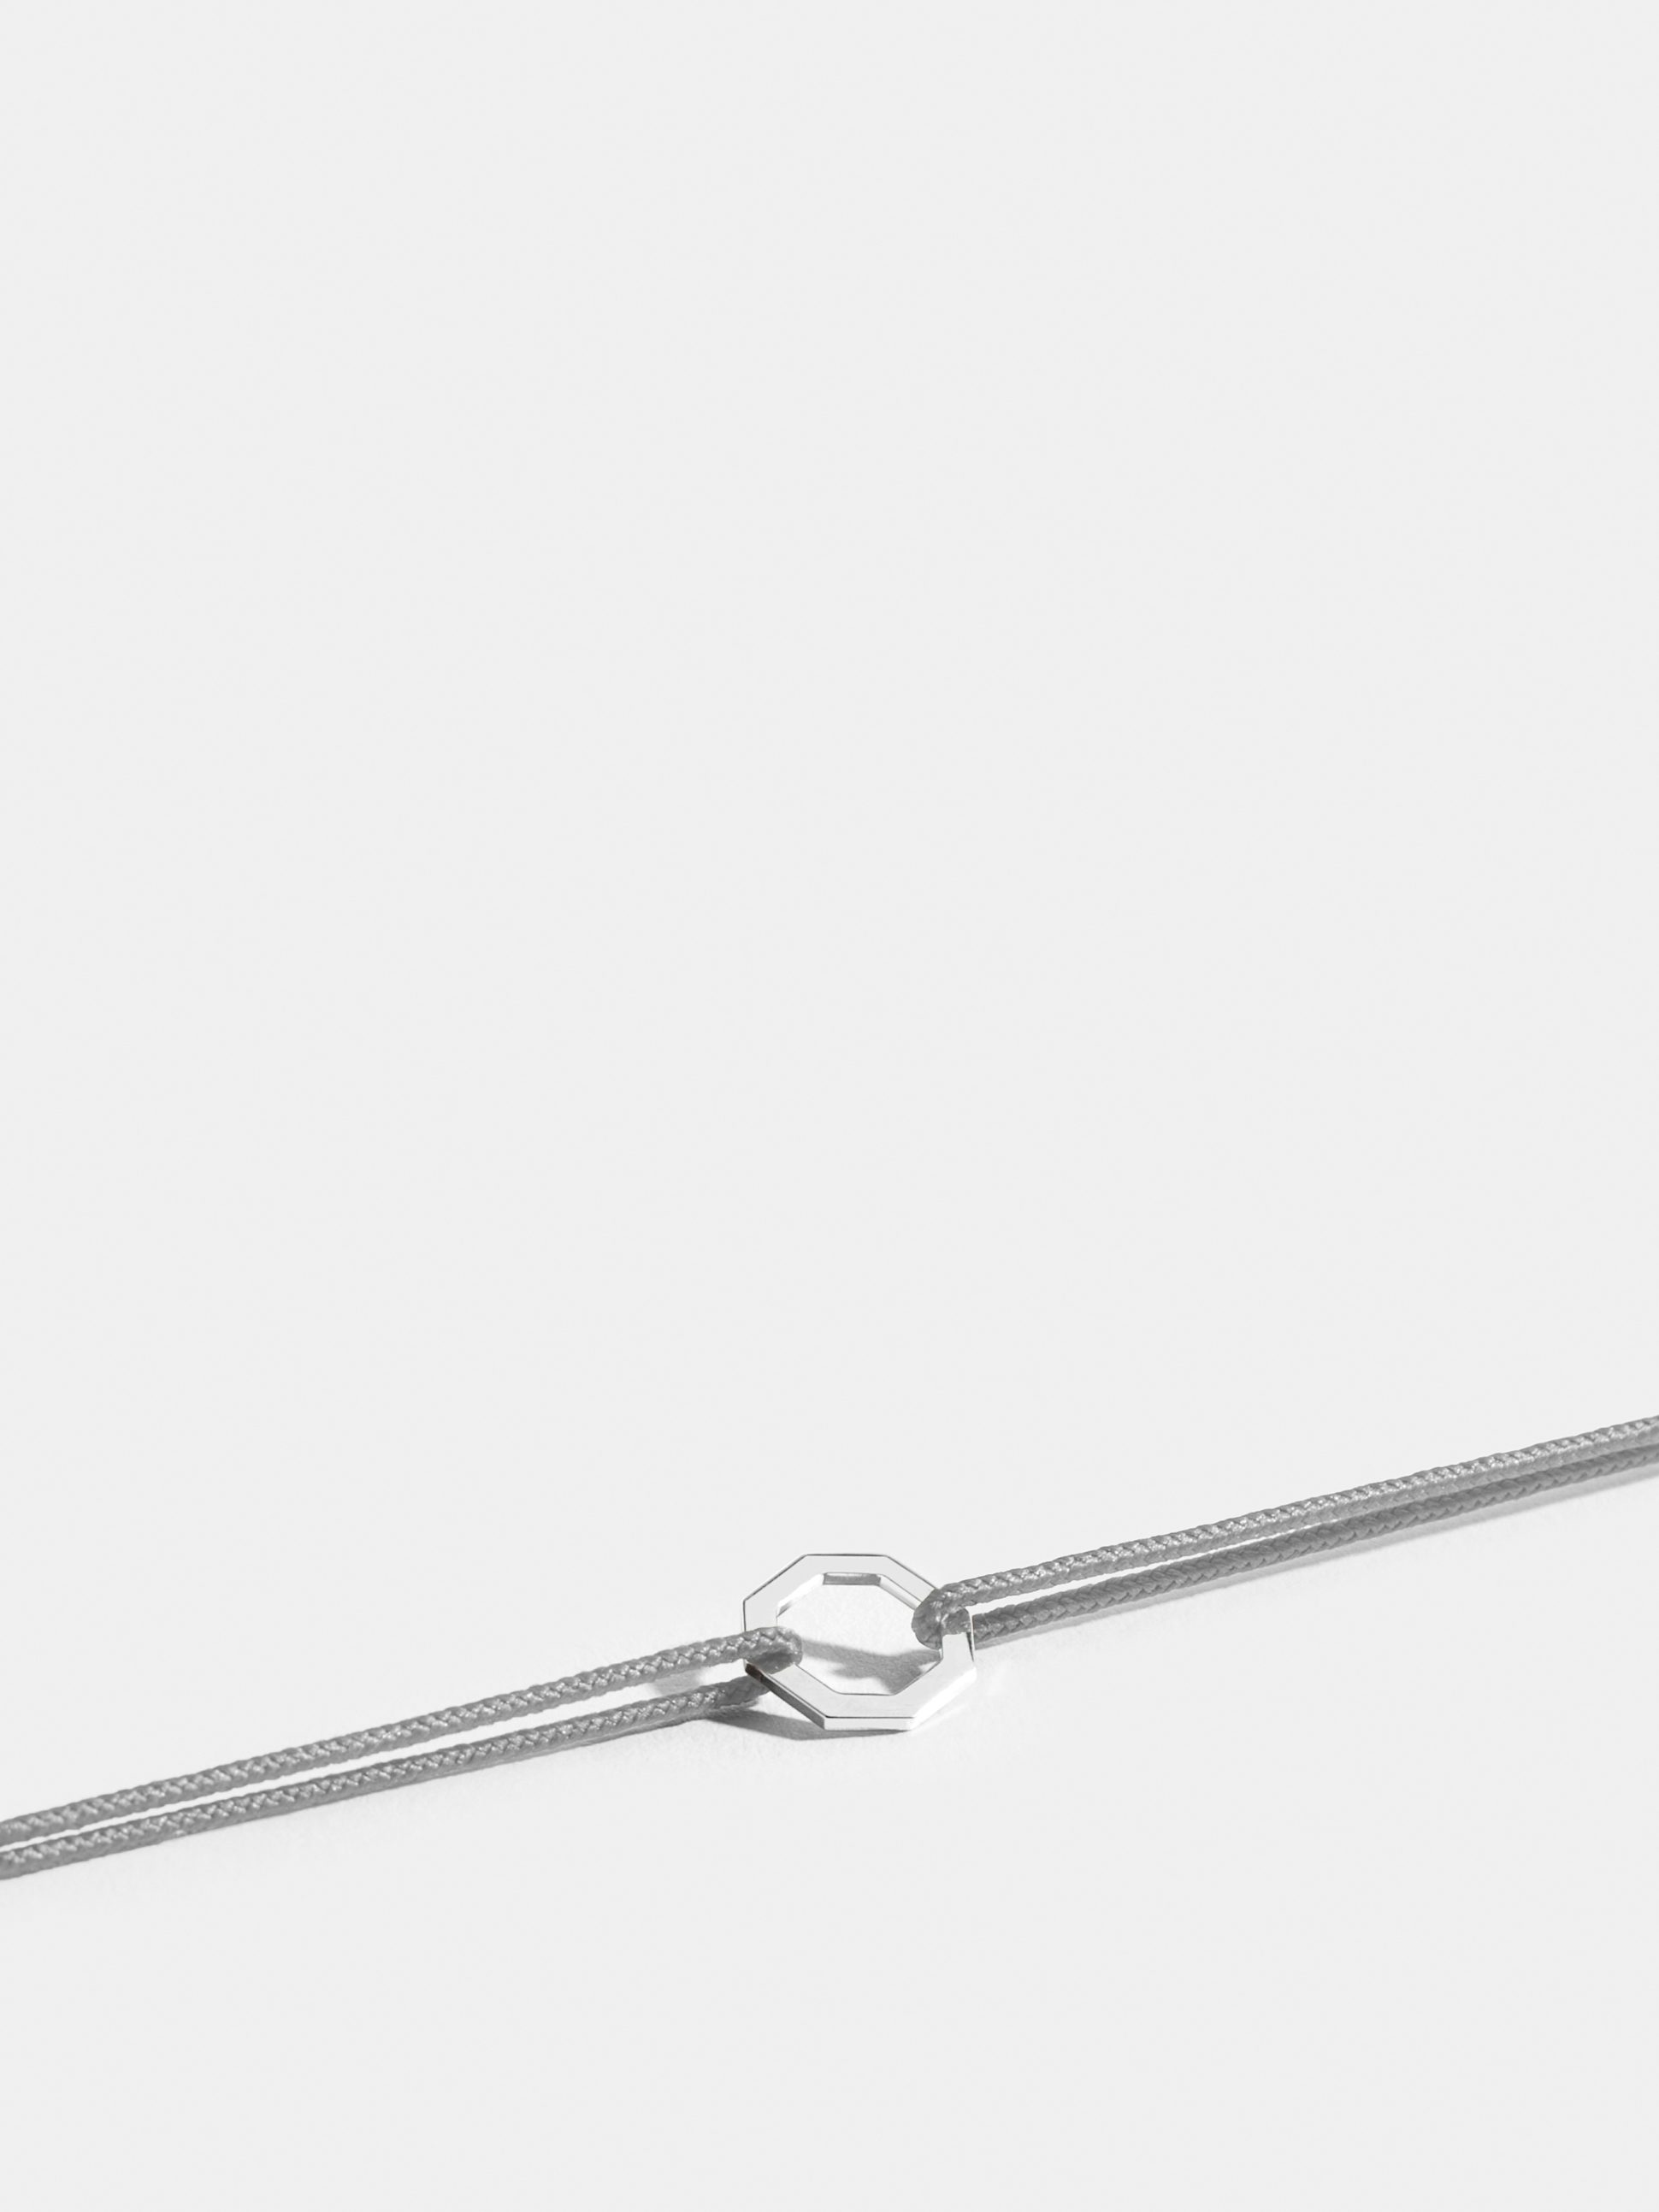 Motif Octogone en Or blanc éthique 18 carats certifié Fairmined, sur cordon gris perlé.